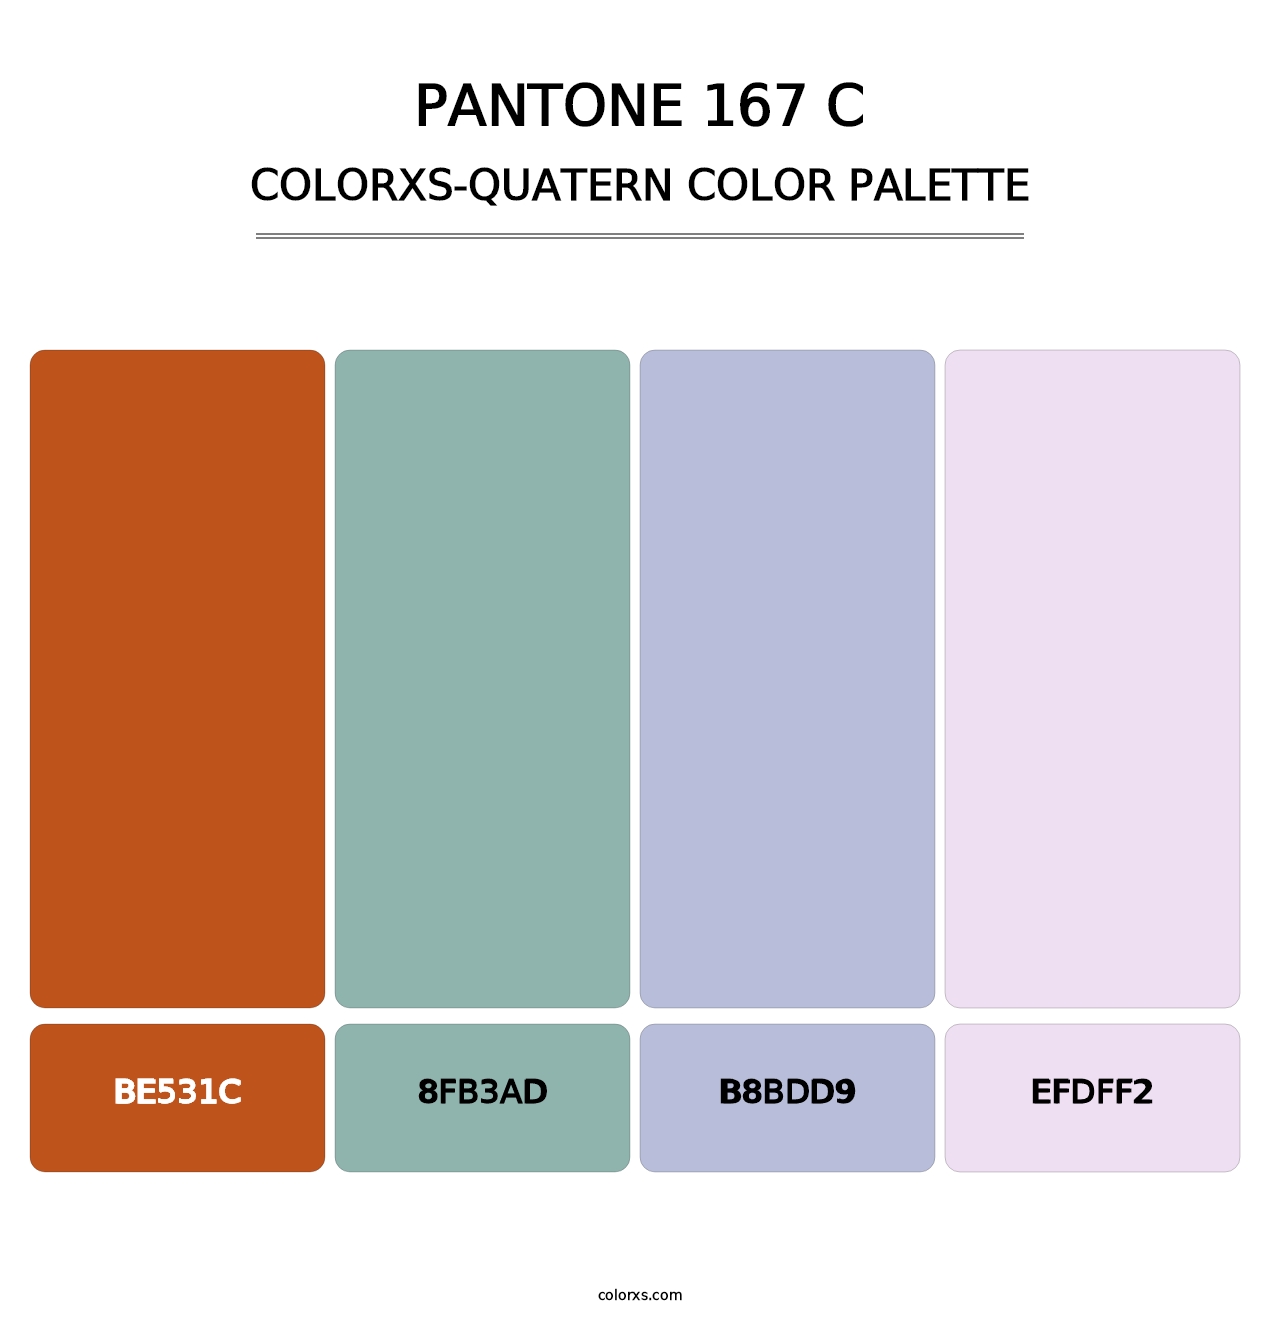 PANTONE 167 C - Colorxs Quatern Palette